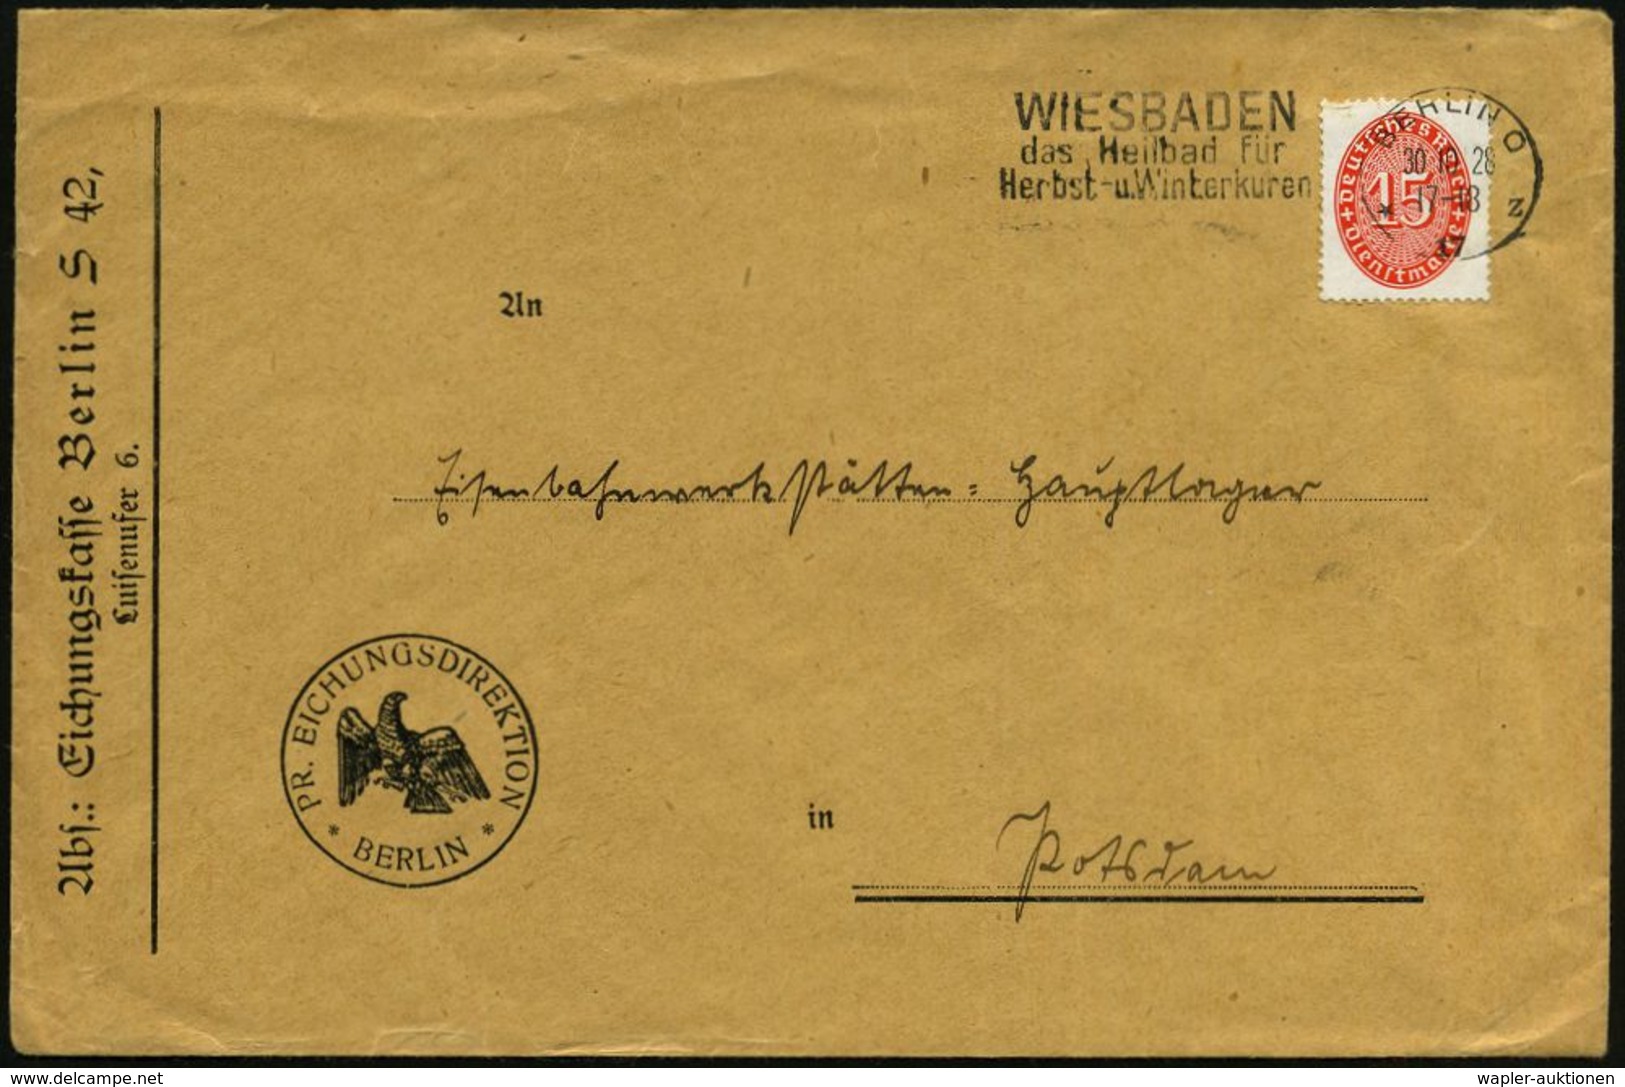 WIEGEN & MESSEN / WAAGE / METER : Berlin S 42 1928 (30.10.) Dienst-Bf.: PR. EICHUNGSDIREKTION/Eichungskasse Berlin (preu - Non Classés